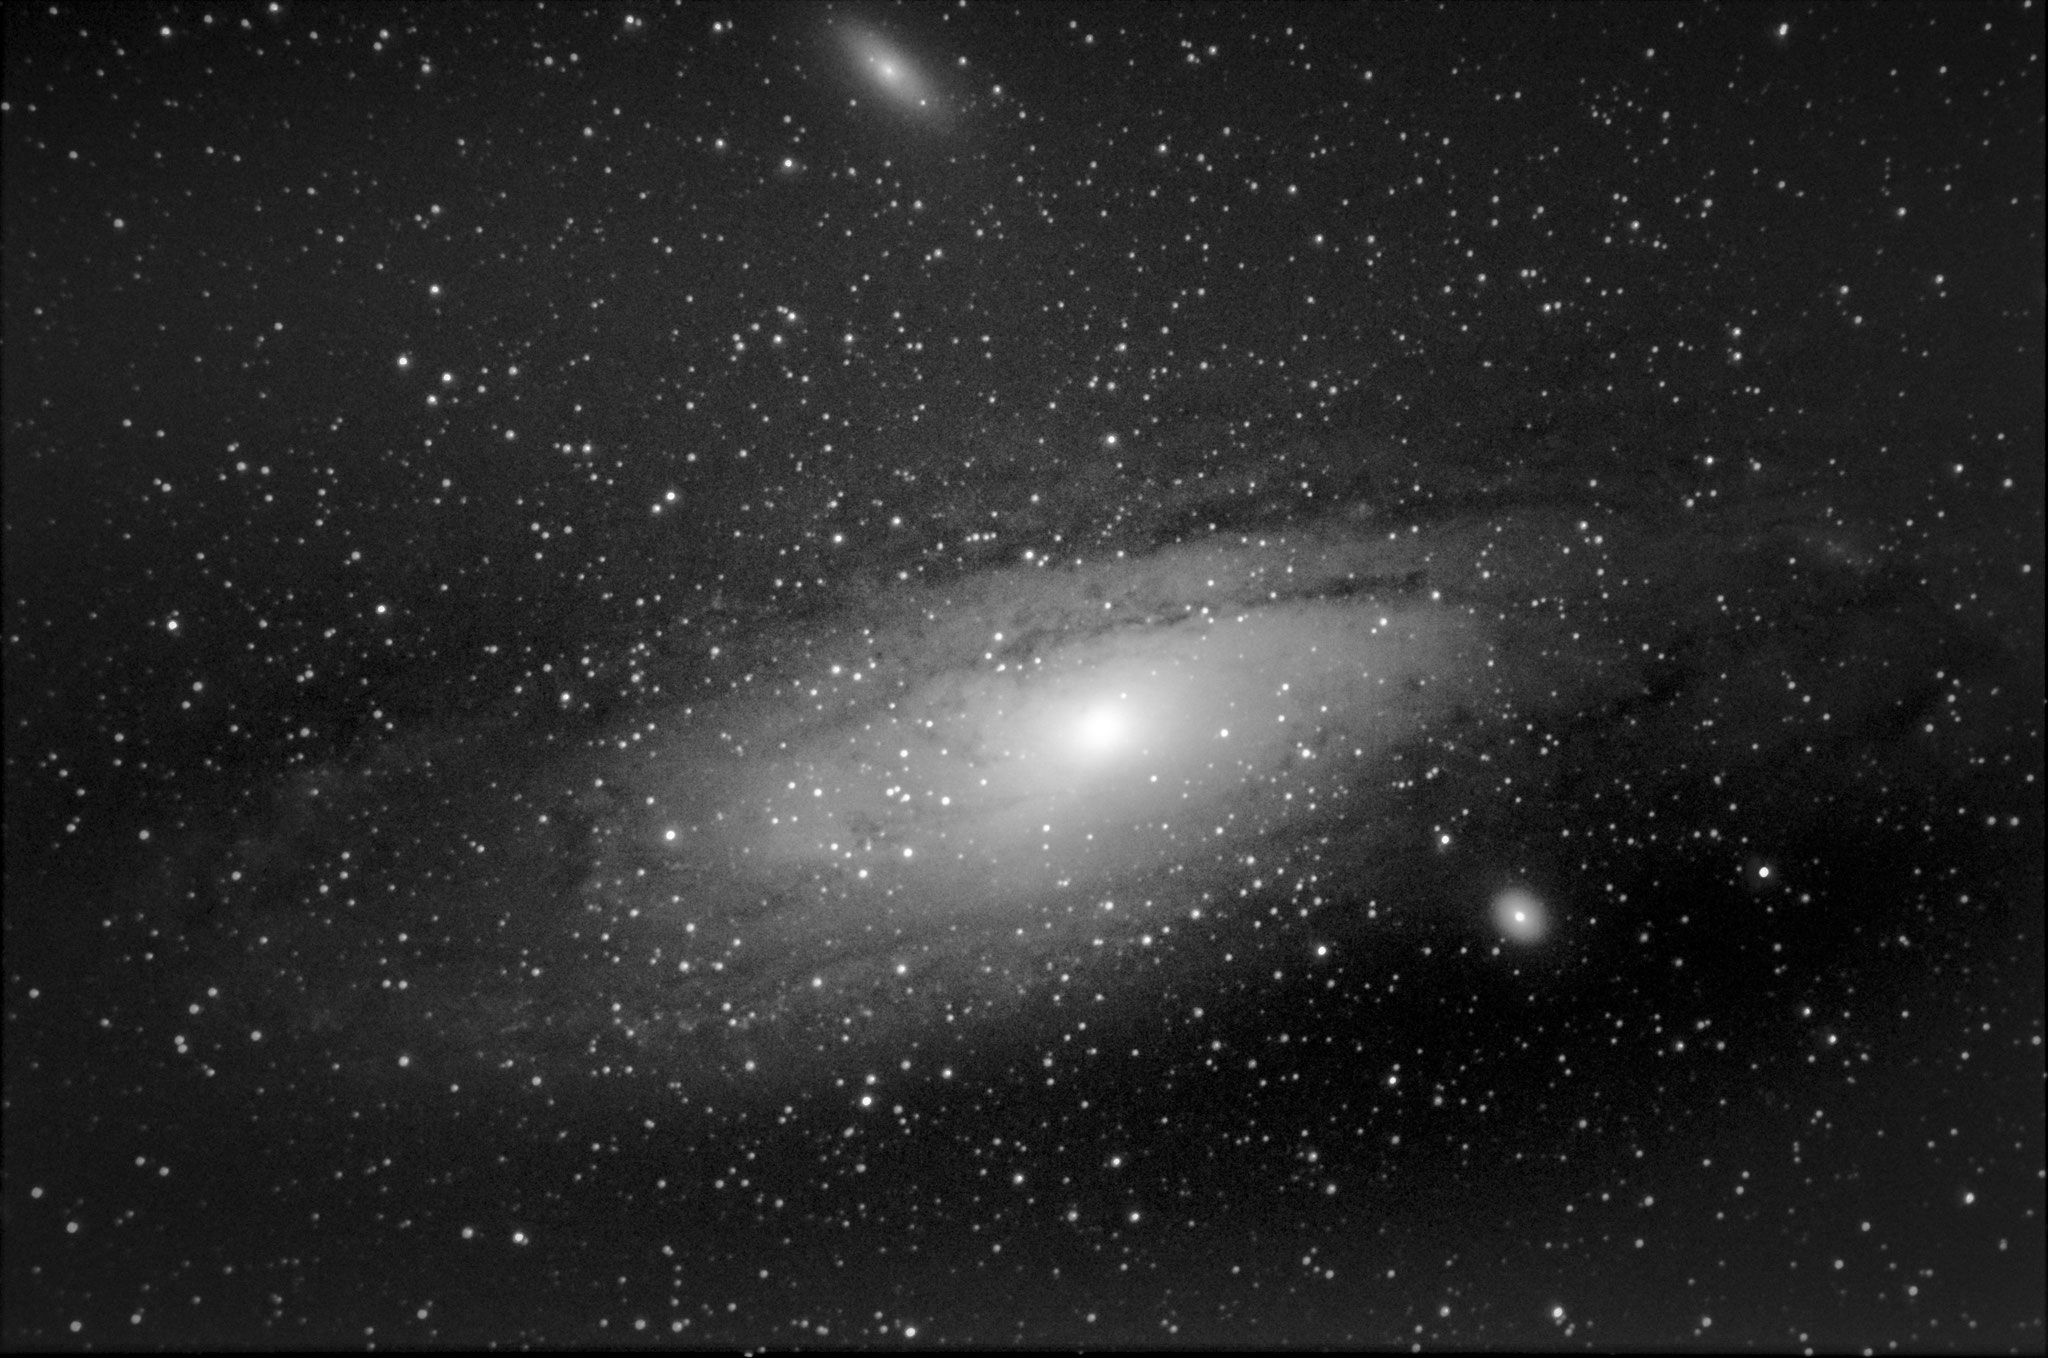 M31 - galaxie d'andromède (19 poses de 25 s à 3200 iso- 10 darks- pas de flat -Loïc  THULLIEZ- lunette achromatique 150/750 / HEQ5 motorisée non guidée/APN pentax K50  - traitement iris/lightroom) passé en N&B sous lightroom, à reprendre ss IRIS